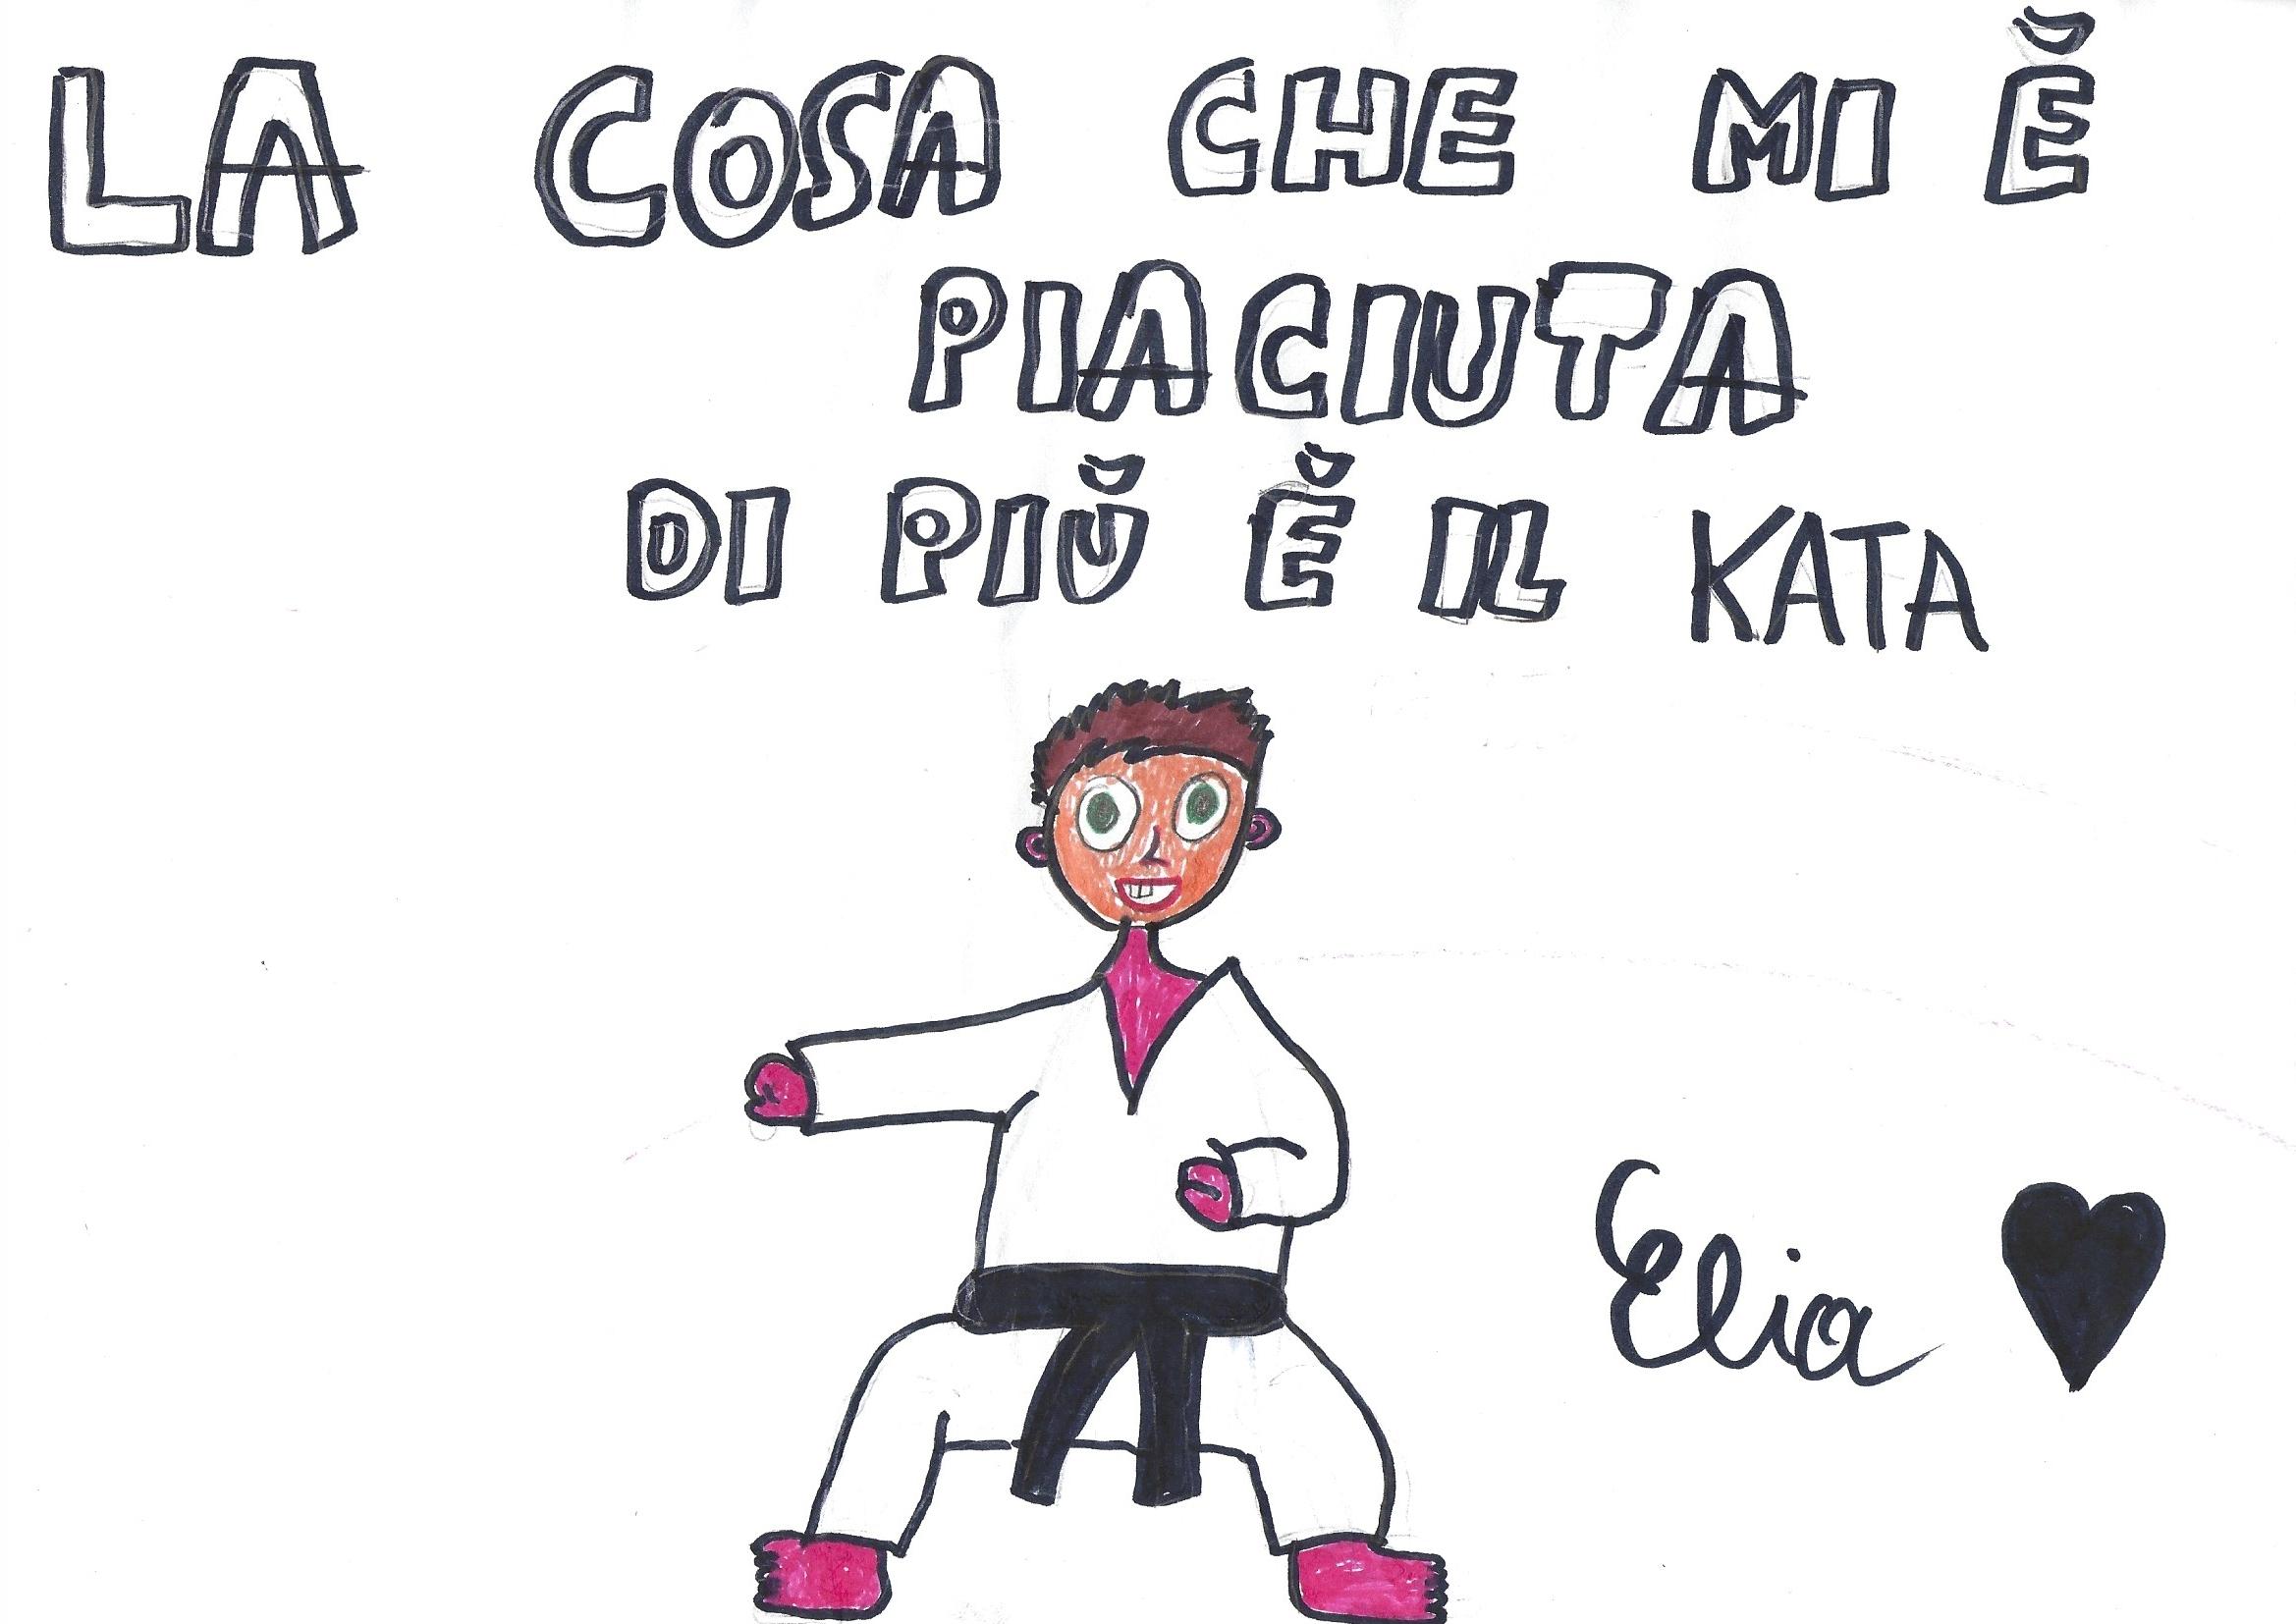 Incontro genitori dei corsi principianti e associazione karate-kai, Civitanova M. – 05/11/2022.